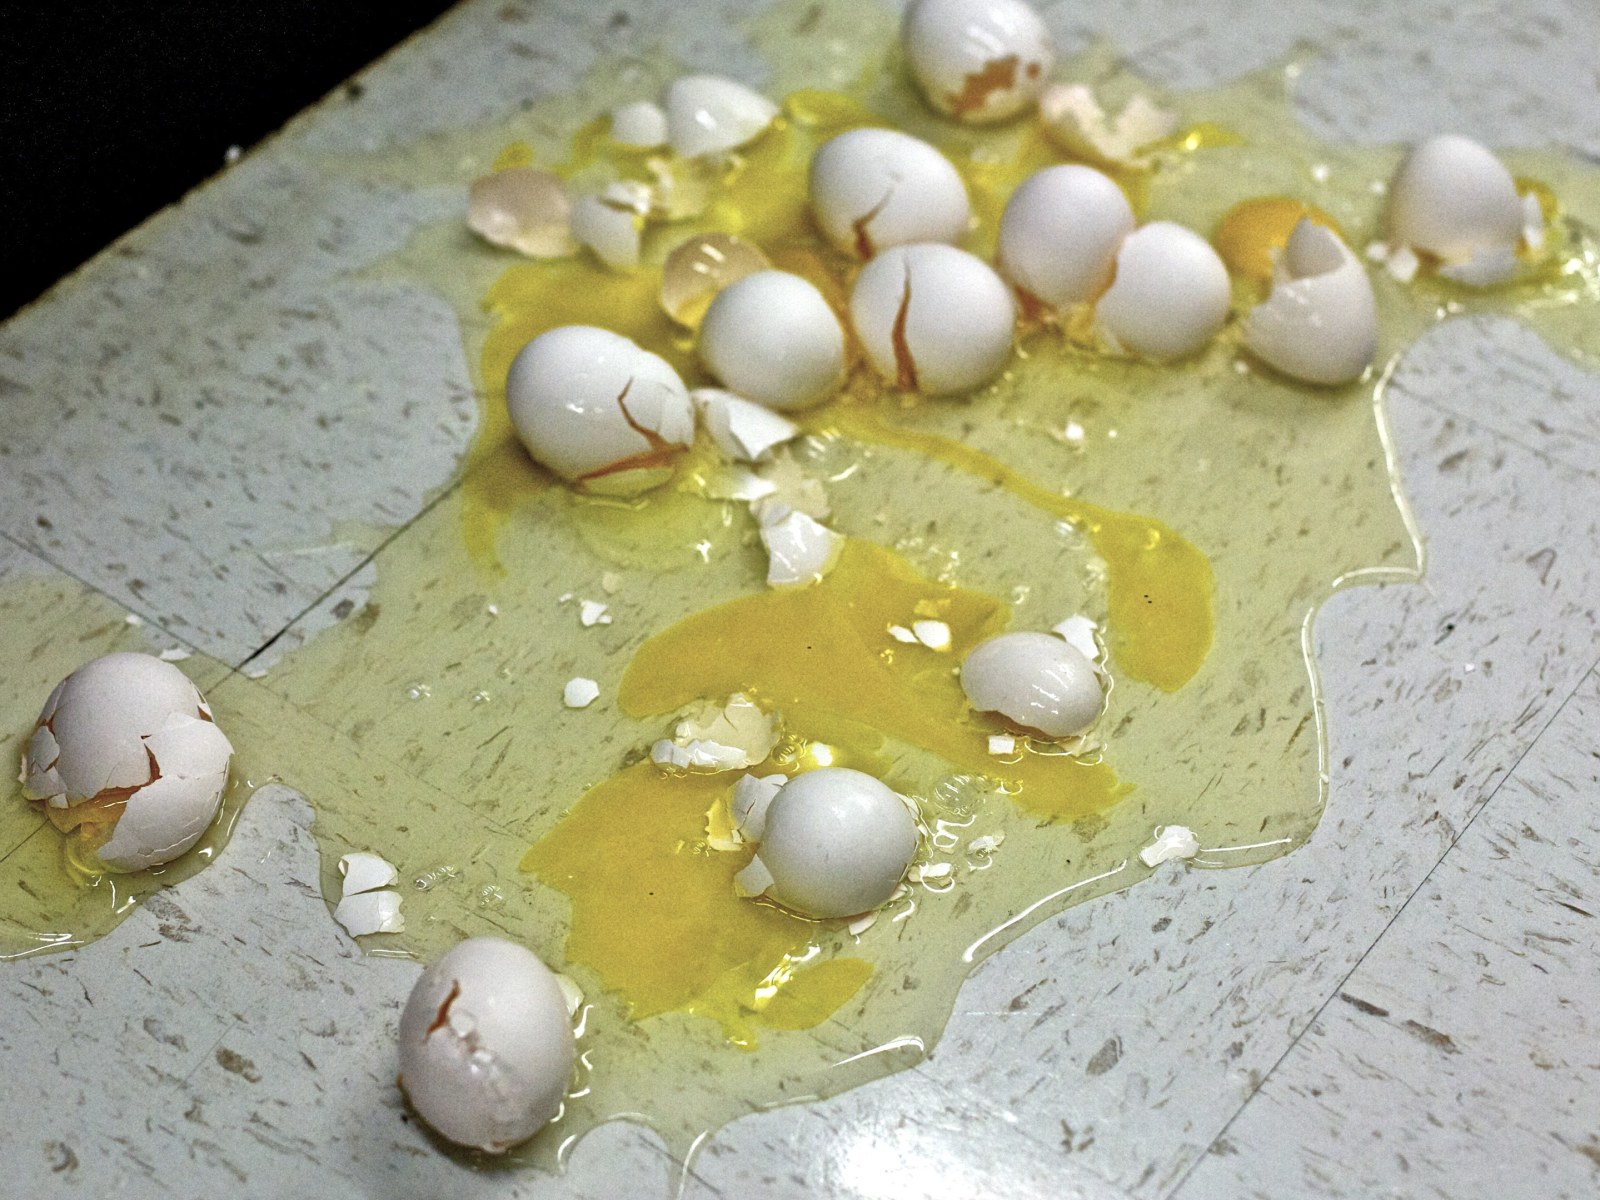 Smashed eggs